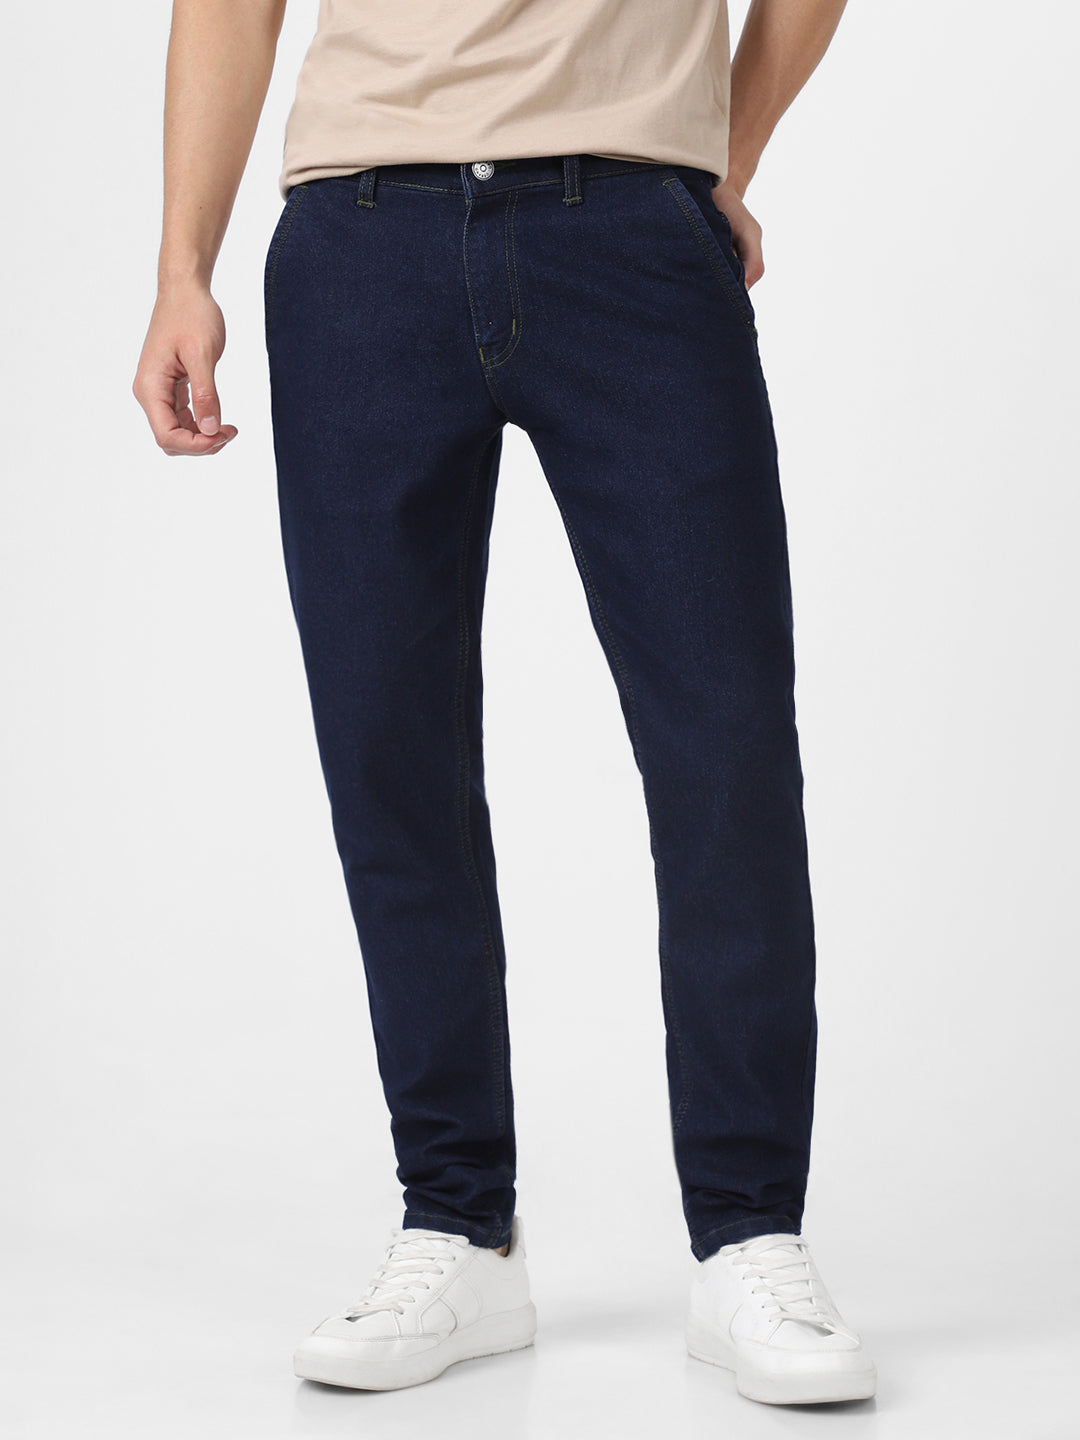 Men's Dark Blue Slim Fit Washed Jeans Stretchable